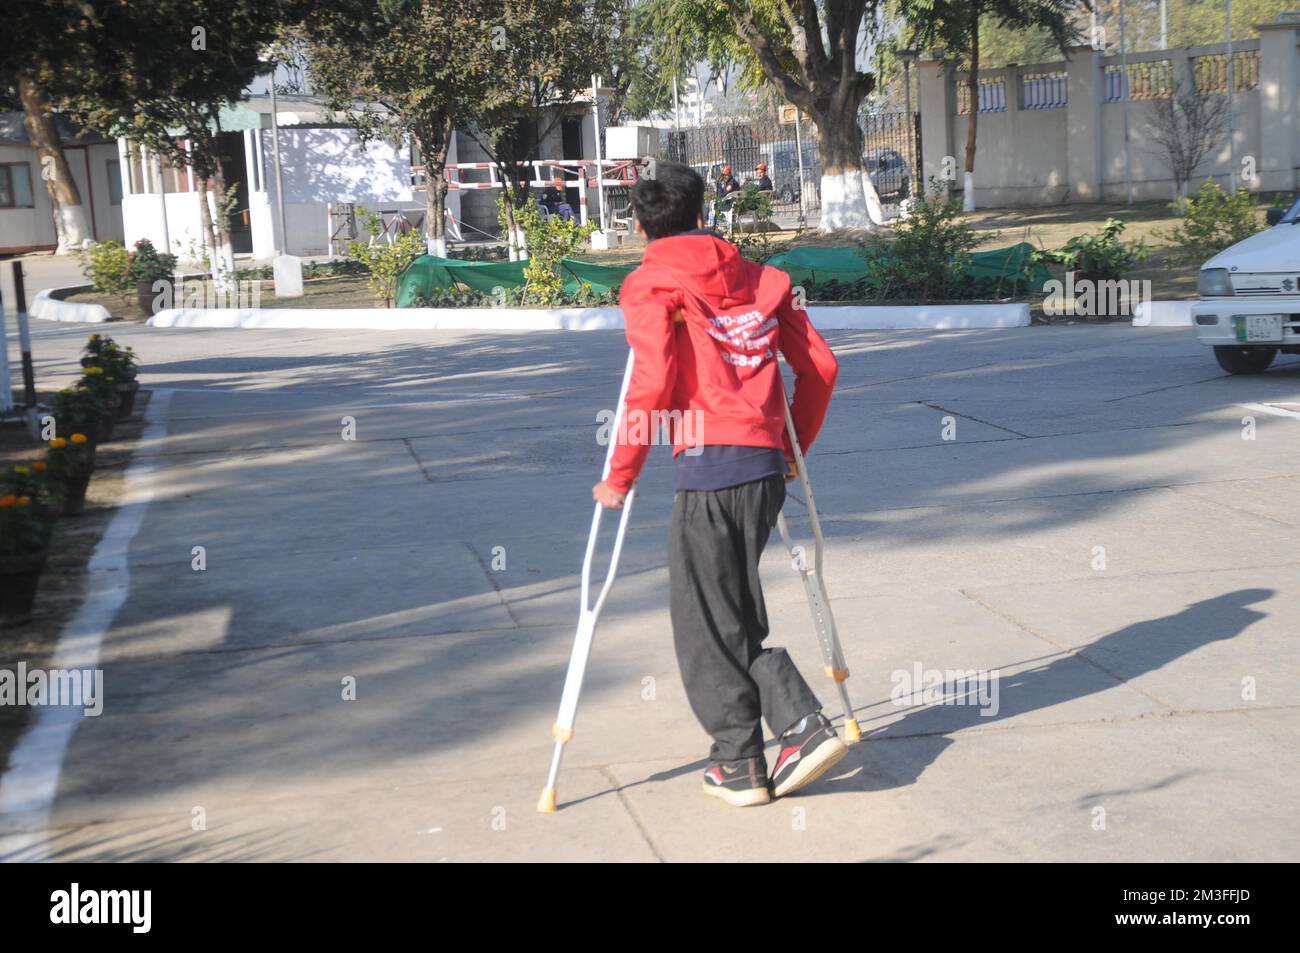 ISLAMABAD, AU PAKISTAN, la Journée internationale des personnes handicapées a été observée aujourd'hui dans le monde entier, qui vise à mettre en lumière les problèmes rencontrés b Banque D'Images